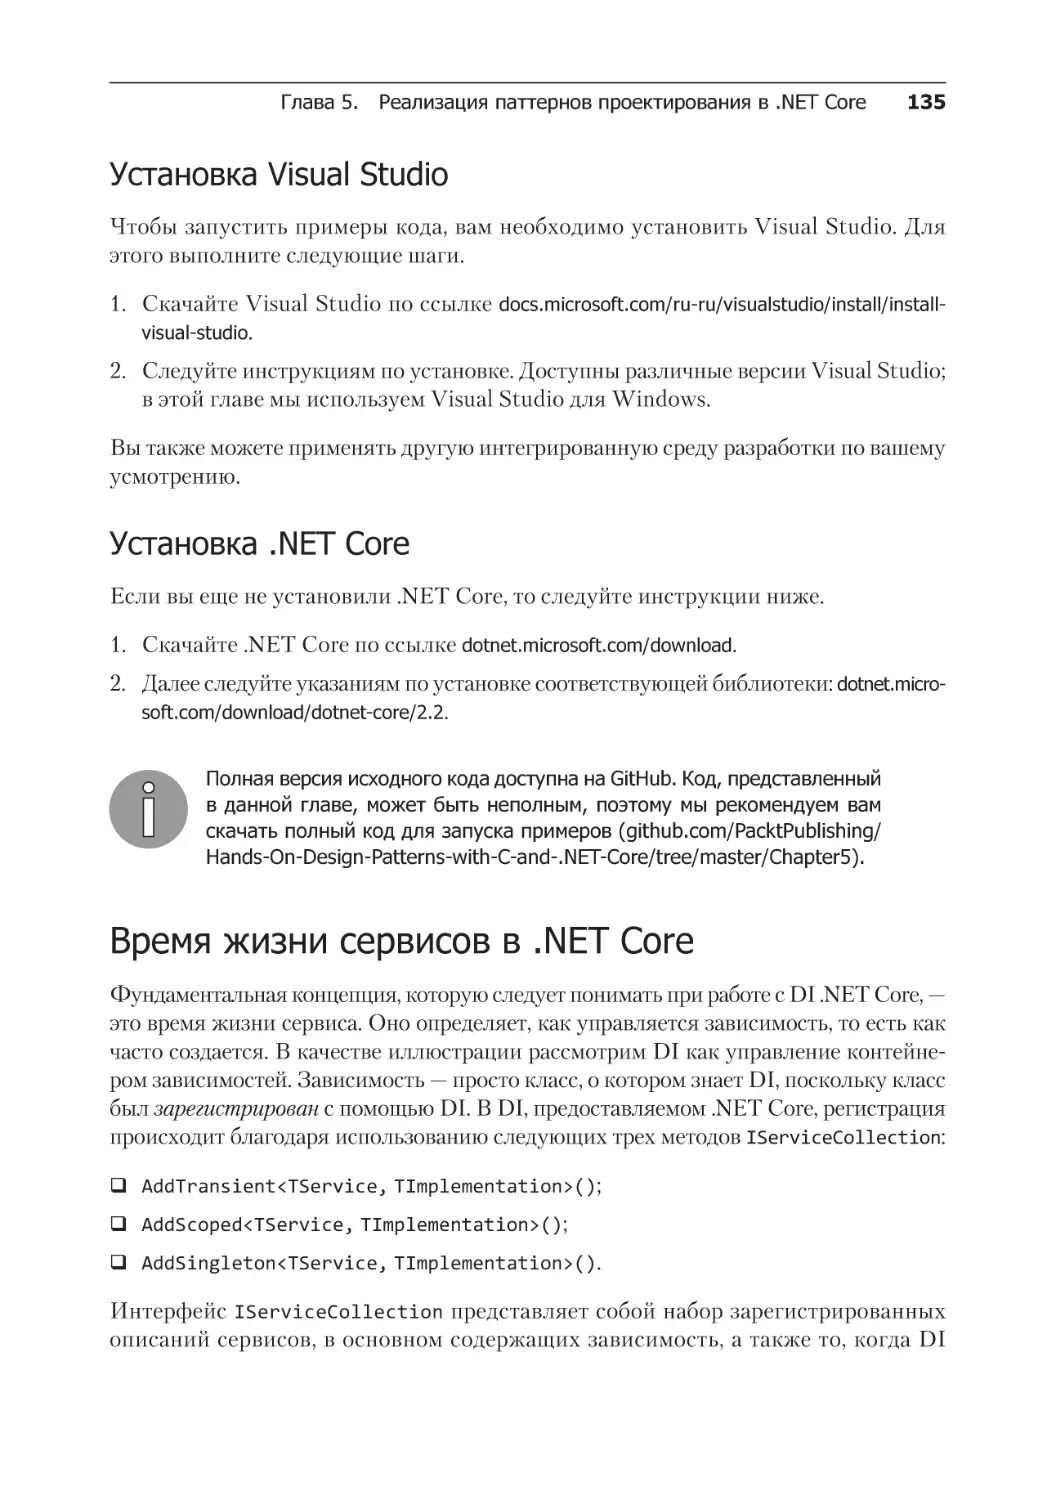 Установка Visual Studio
Установка .NET Core
Время жизни сервисов в .Net Core